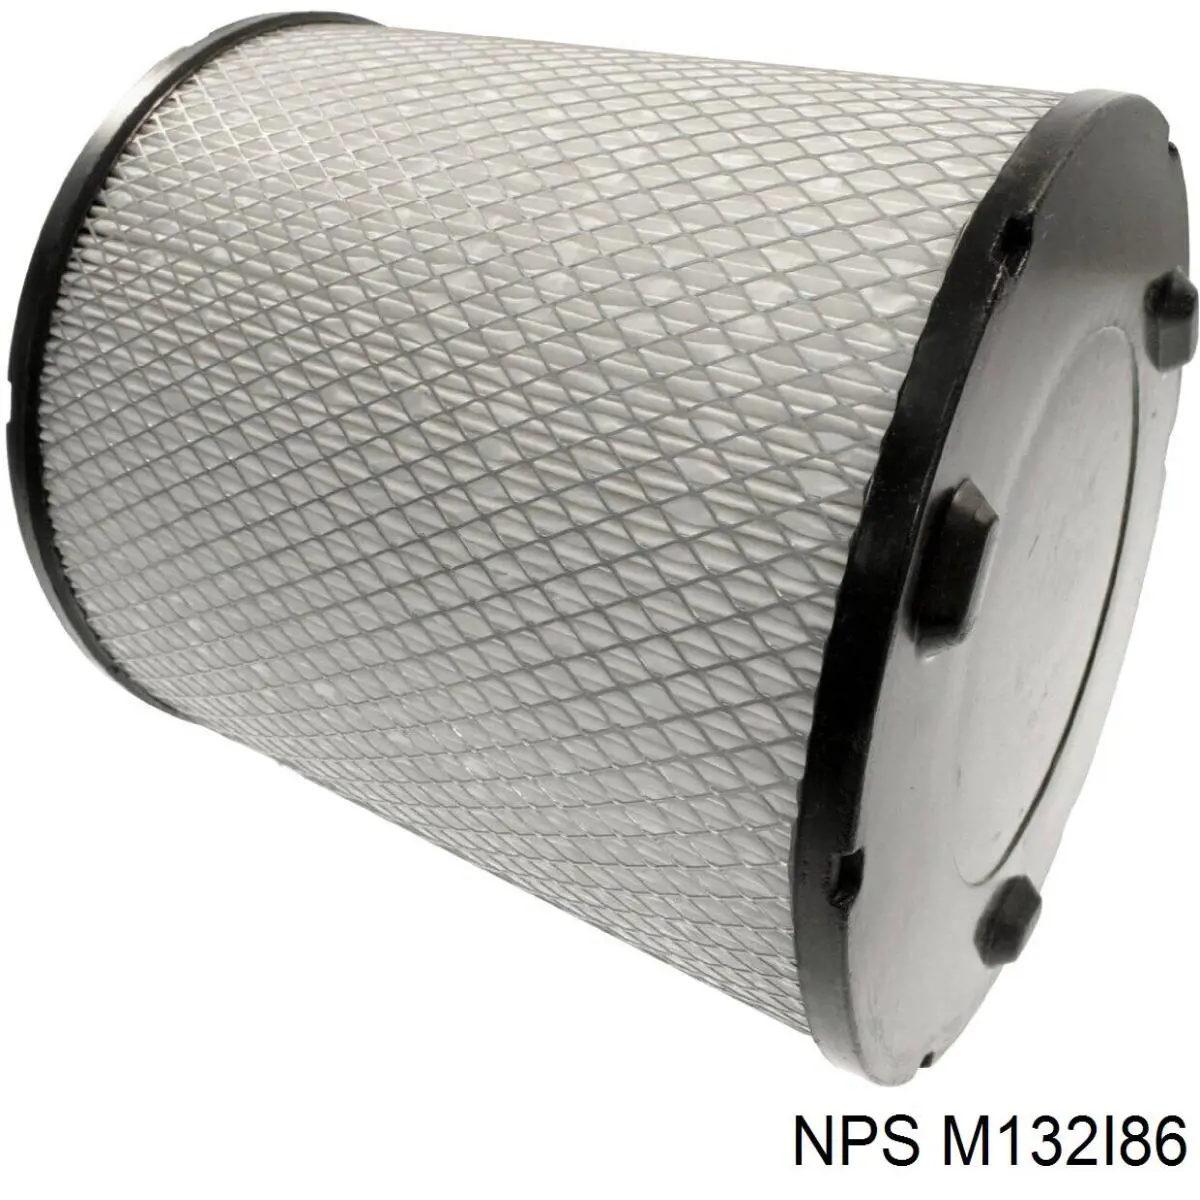 M132I86 NPS filtro de aire